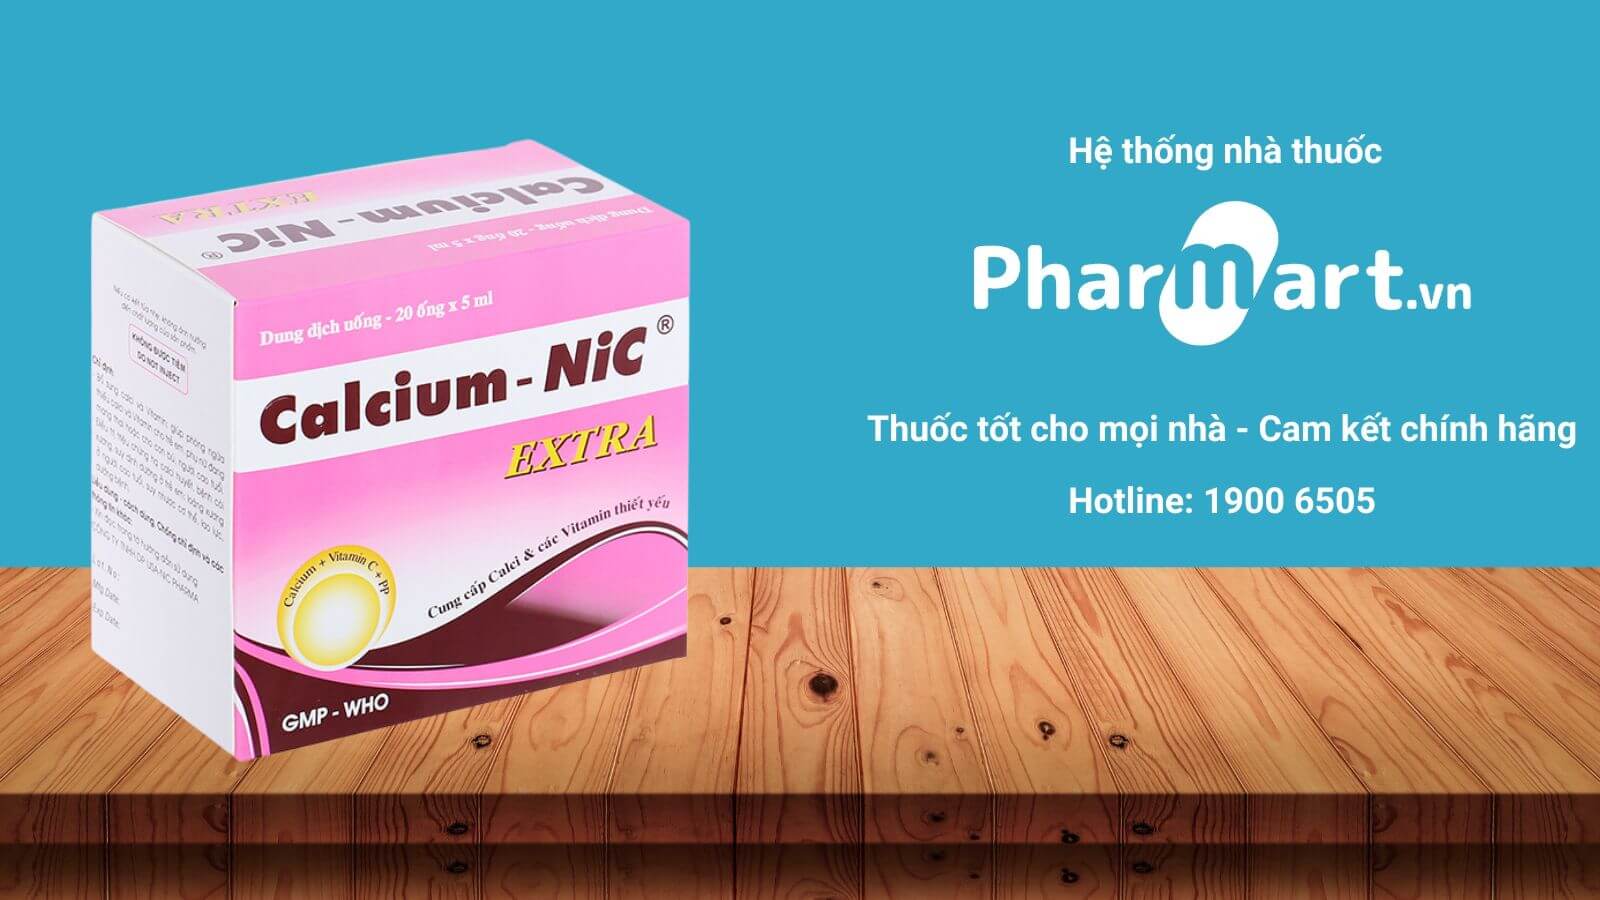 Pharmart.vn - Địa chỉ mua hàng uy tín chất lượng